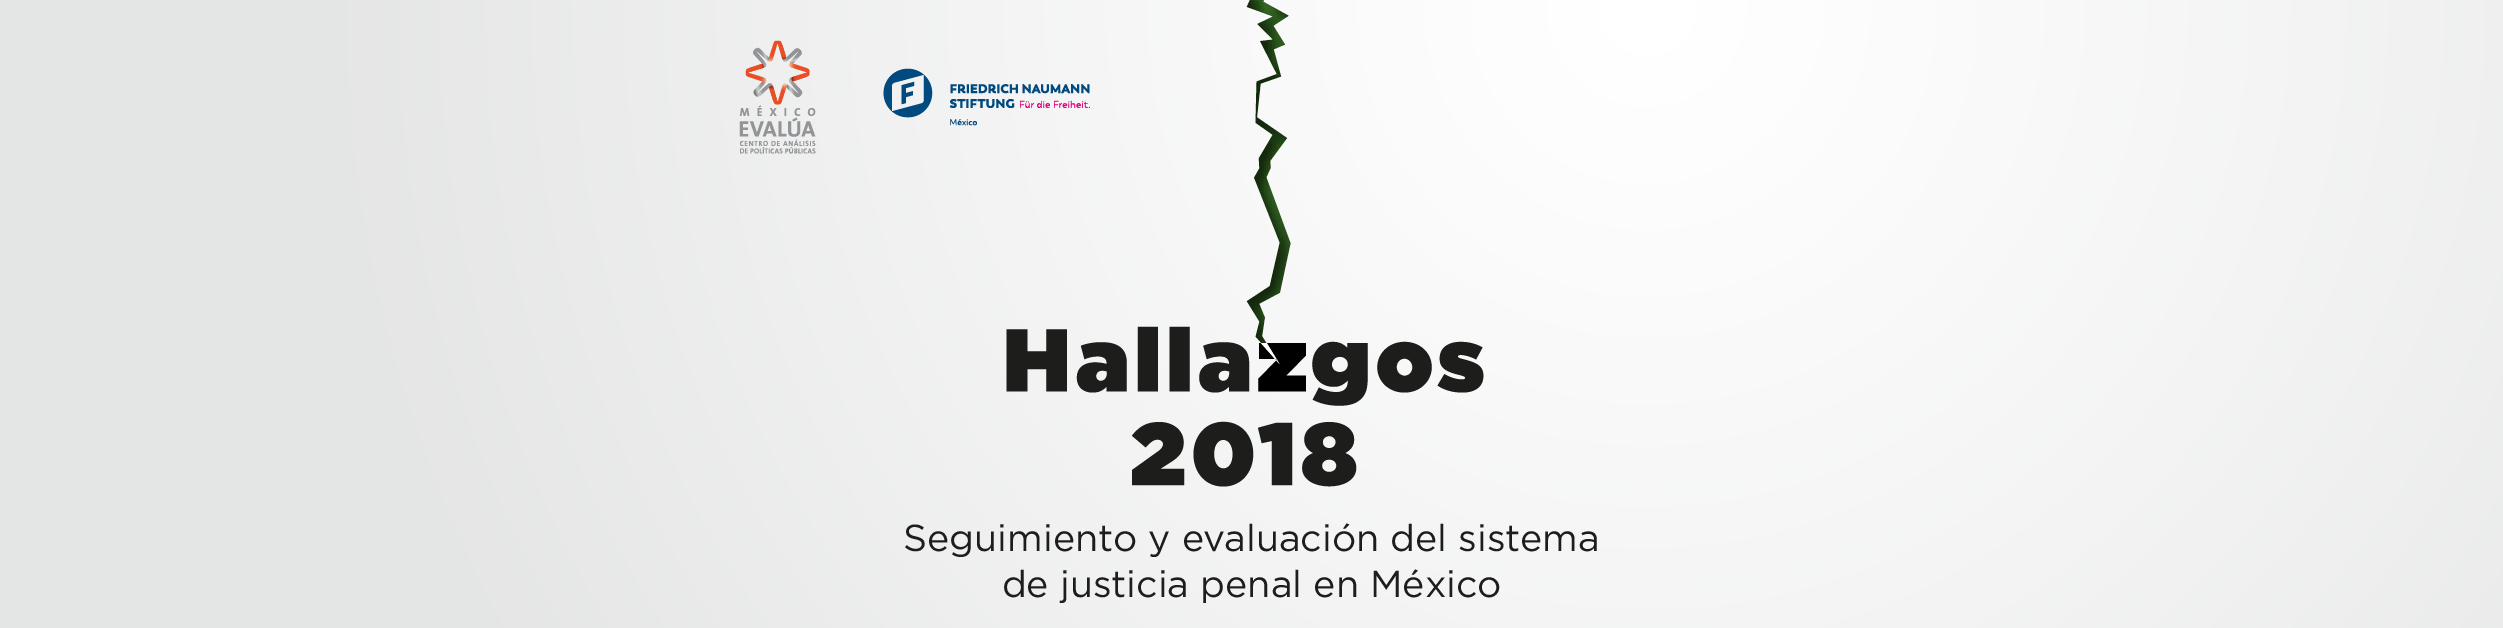 Hallazgos Logo - Hallazgos 2018: Seguimiento y evaluación del sistema de justicia ...